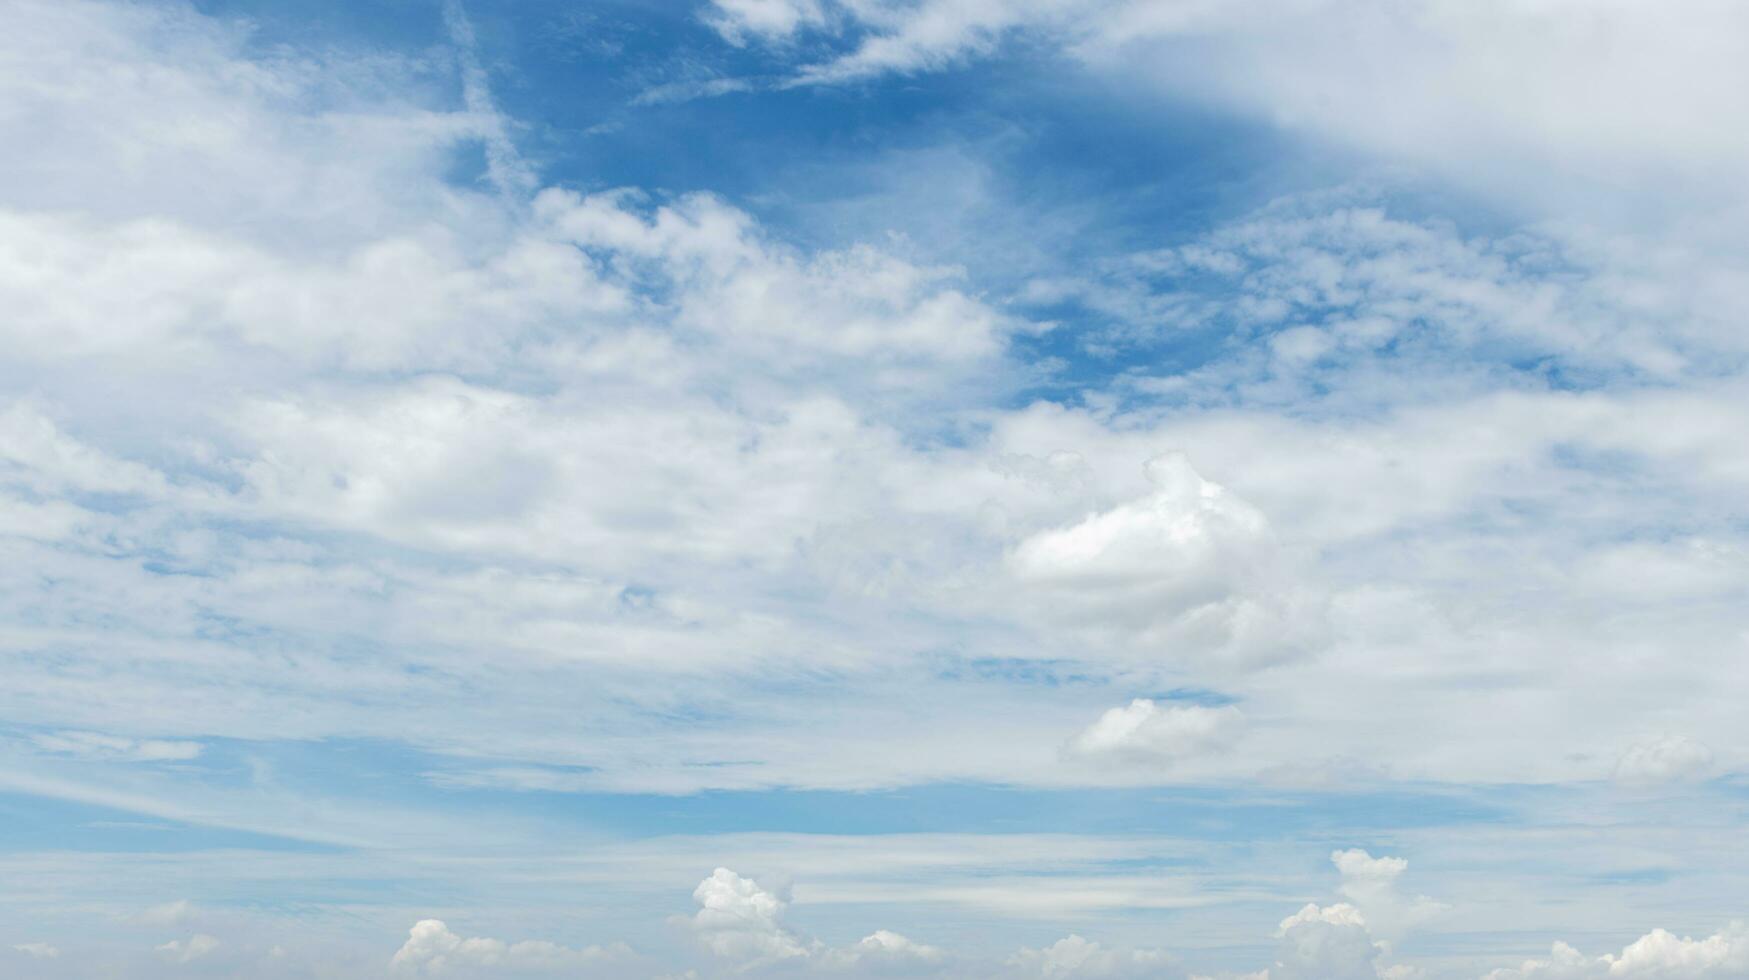 cielo blu con sfondo di nuvole foto